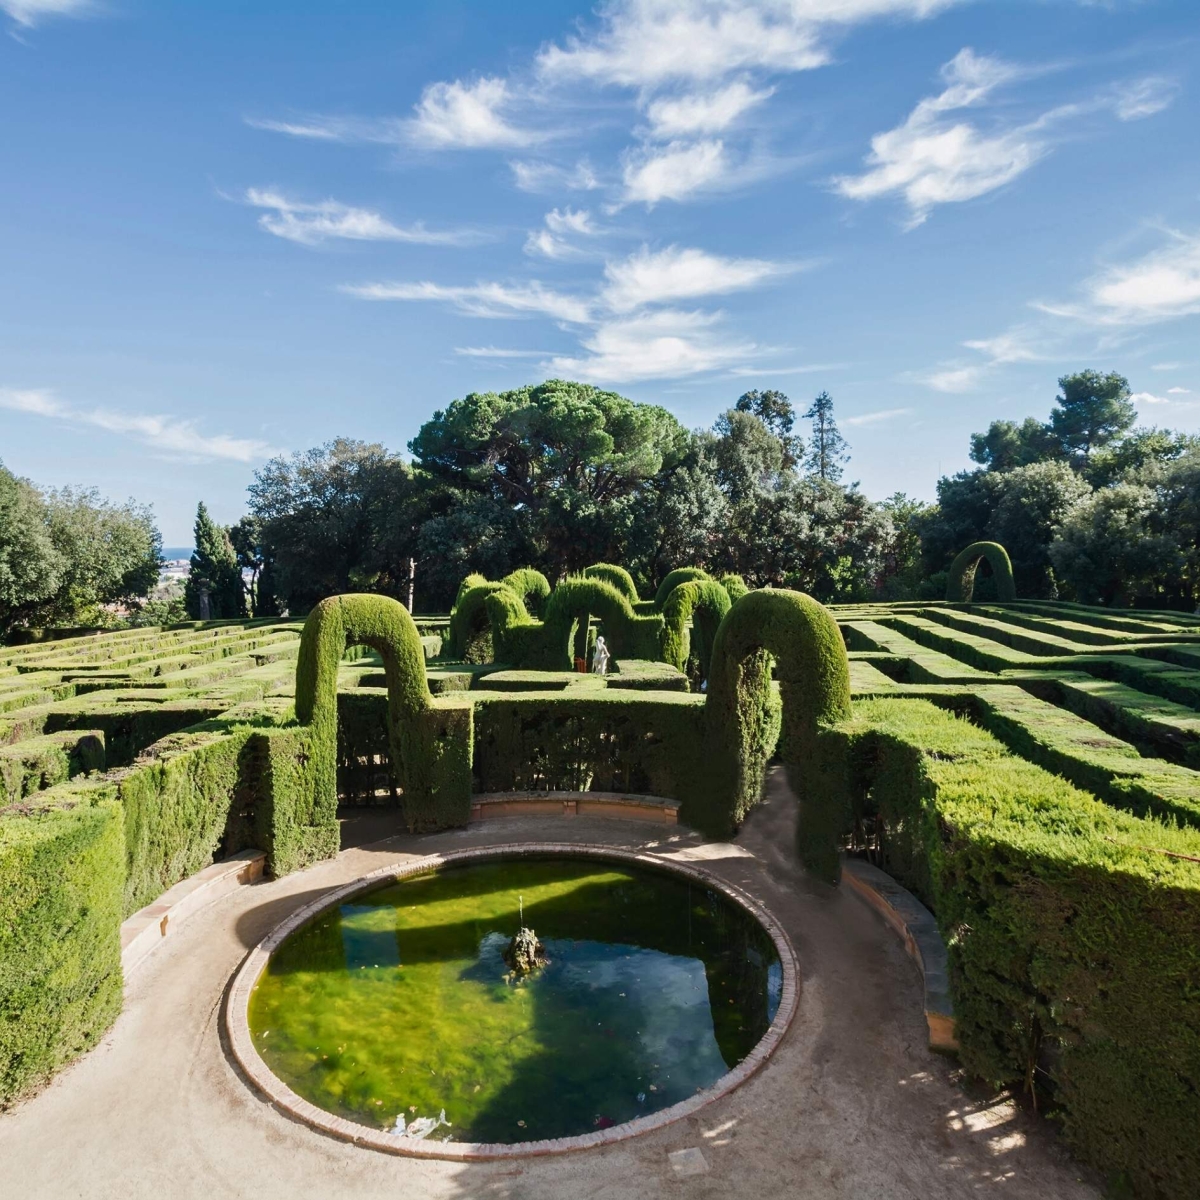 Il Parco Labirinto di Horta, a volte chiamato Laberint Horta Gardens, è un giardino storico nel quartiere Horta-Guinardó a Barcellona e il più antico del suo genere in città